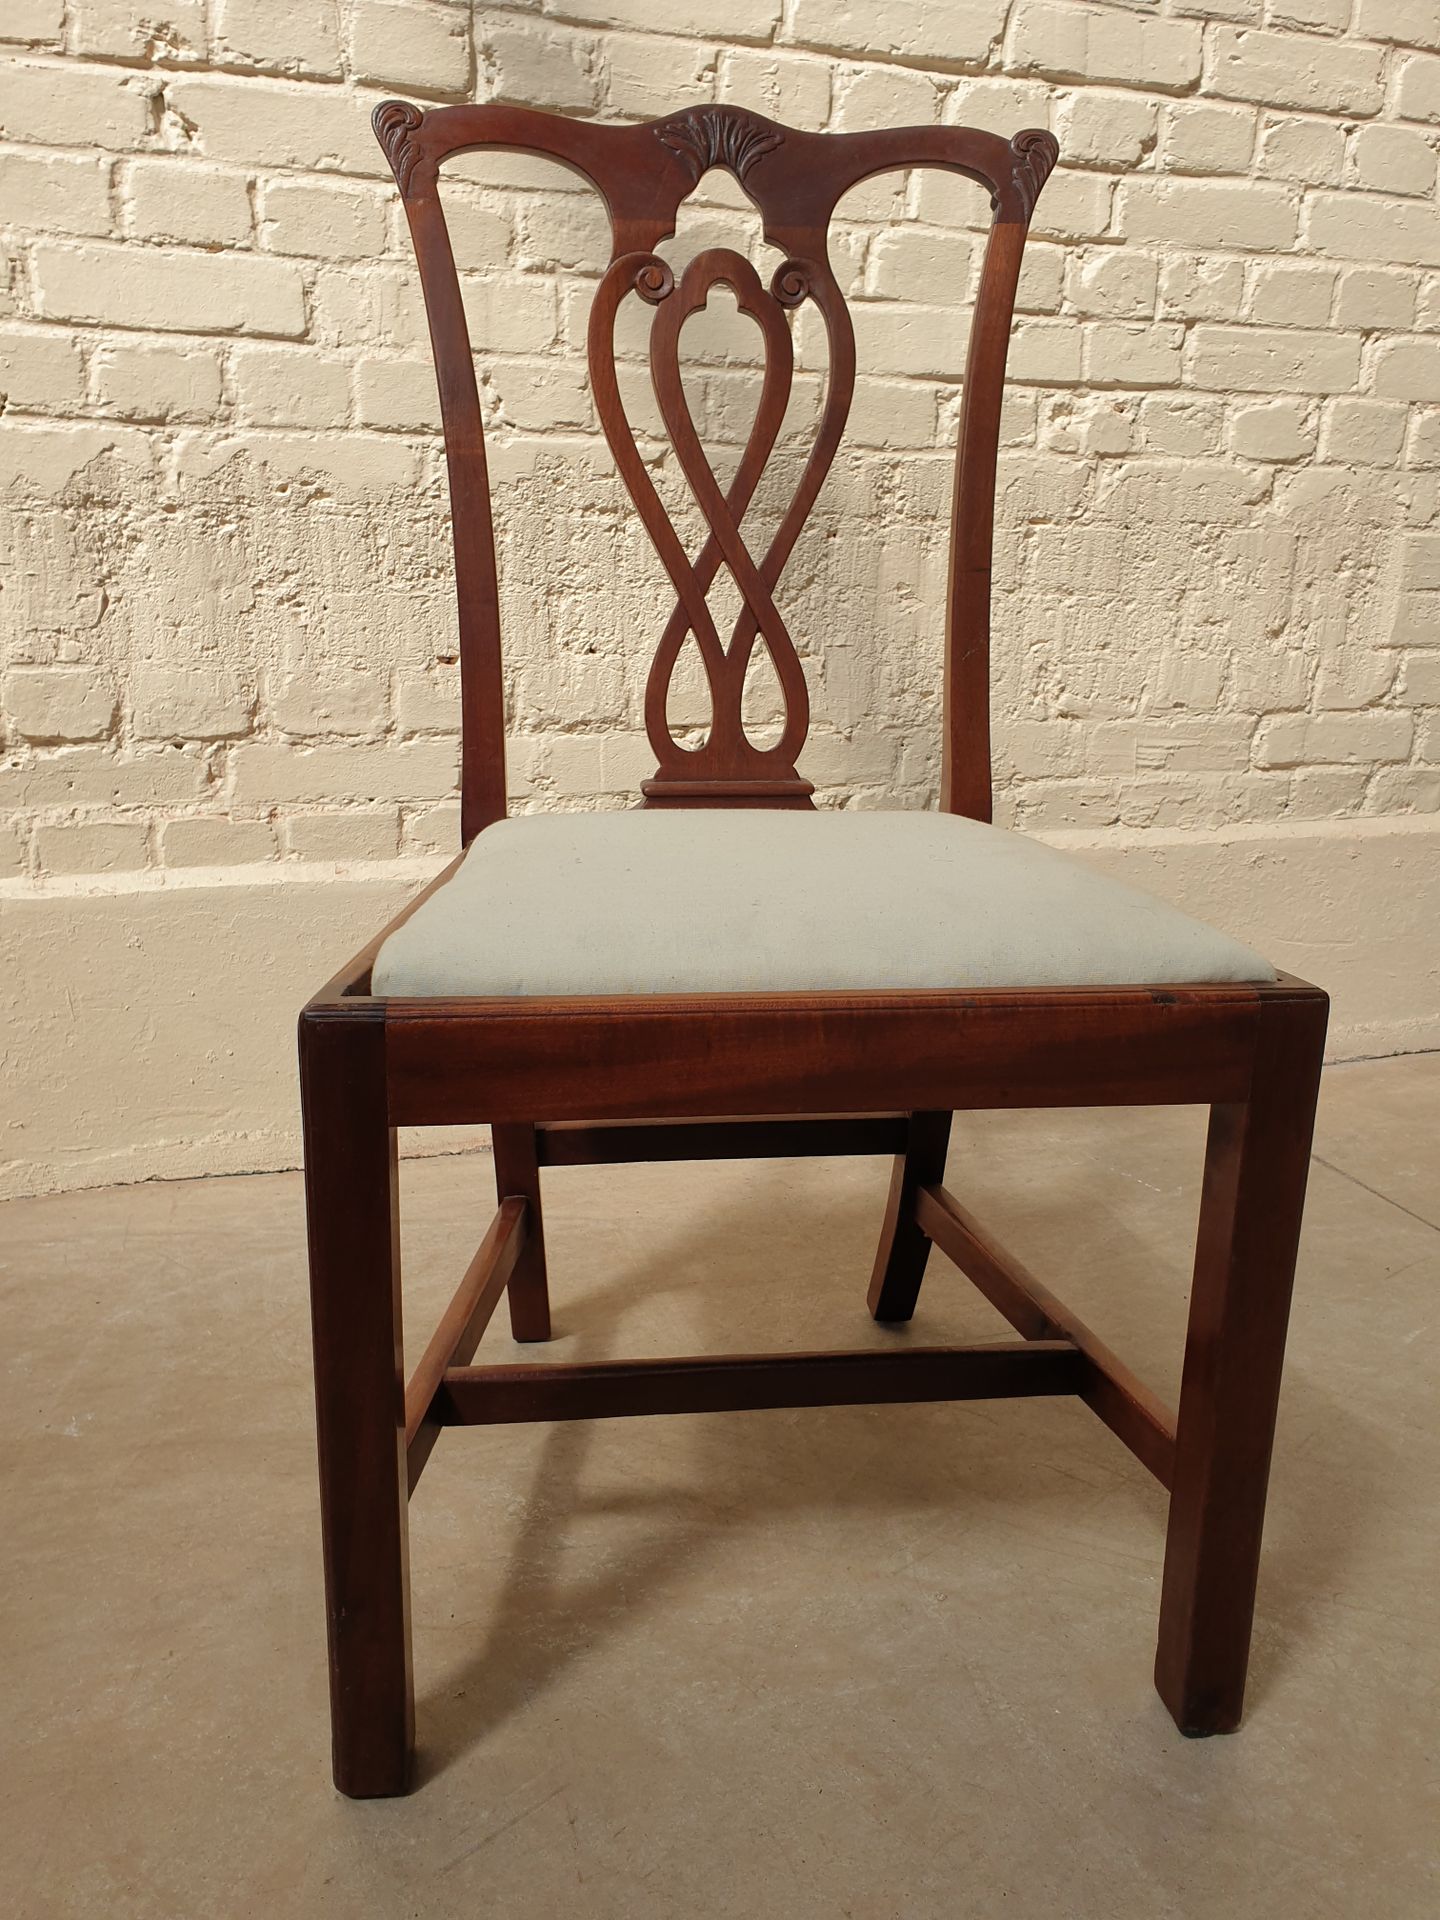 Null 一套漂亮的八把模制桃花心木椅子

镂空的背部有交错的装饰

英文作品

19世纪

93 x 48 x 48厘米

使用和维护的条件